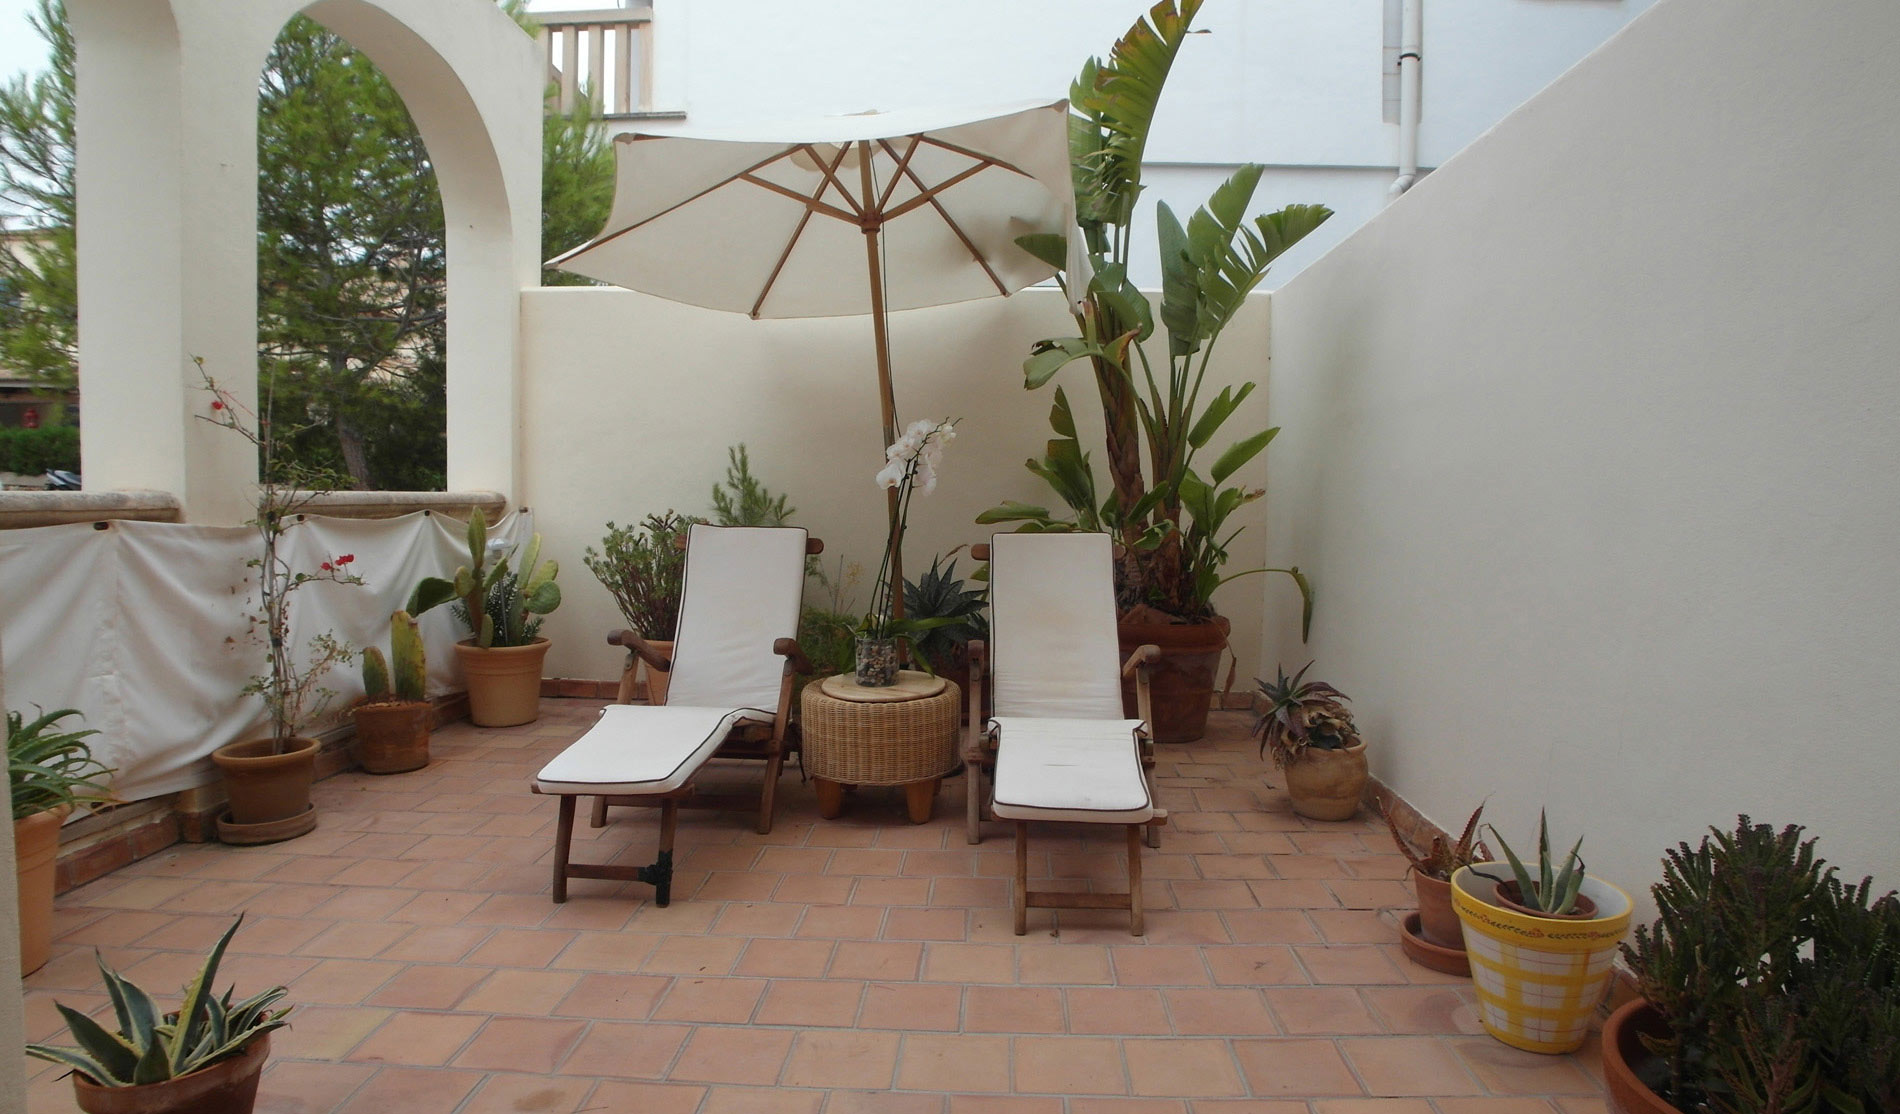 Terrasse in Mediterranem Stil mit vielen Grünpflanzen